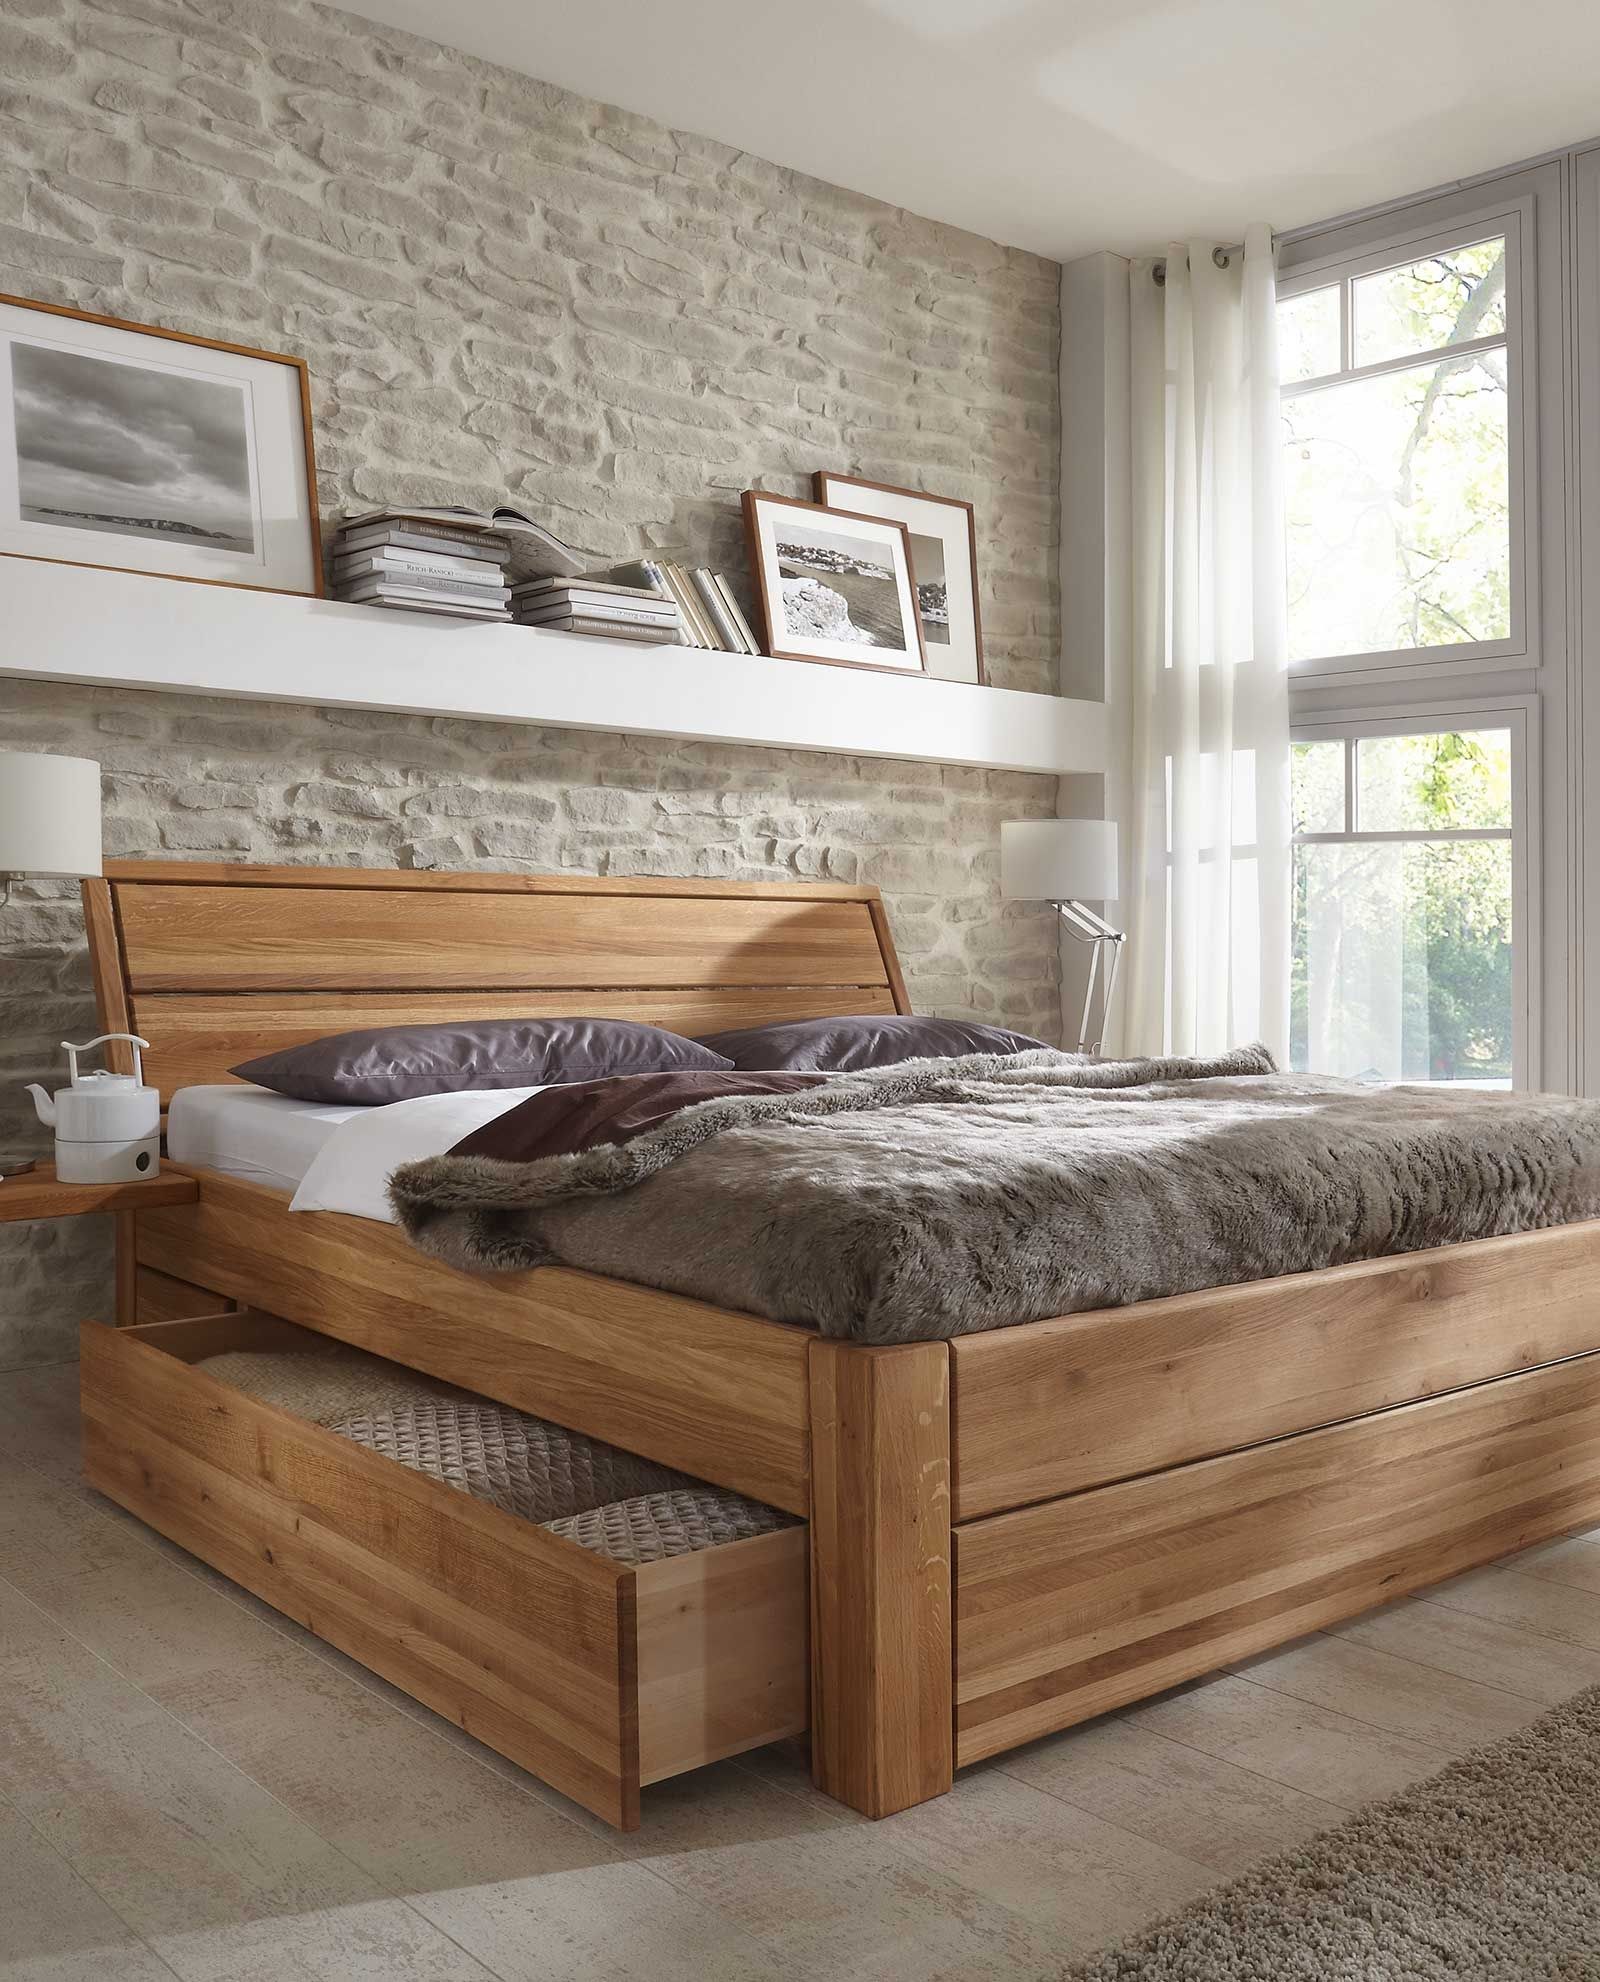 Деревянная мебель в интерьере спальни